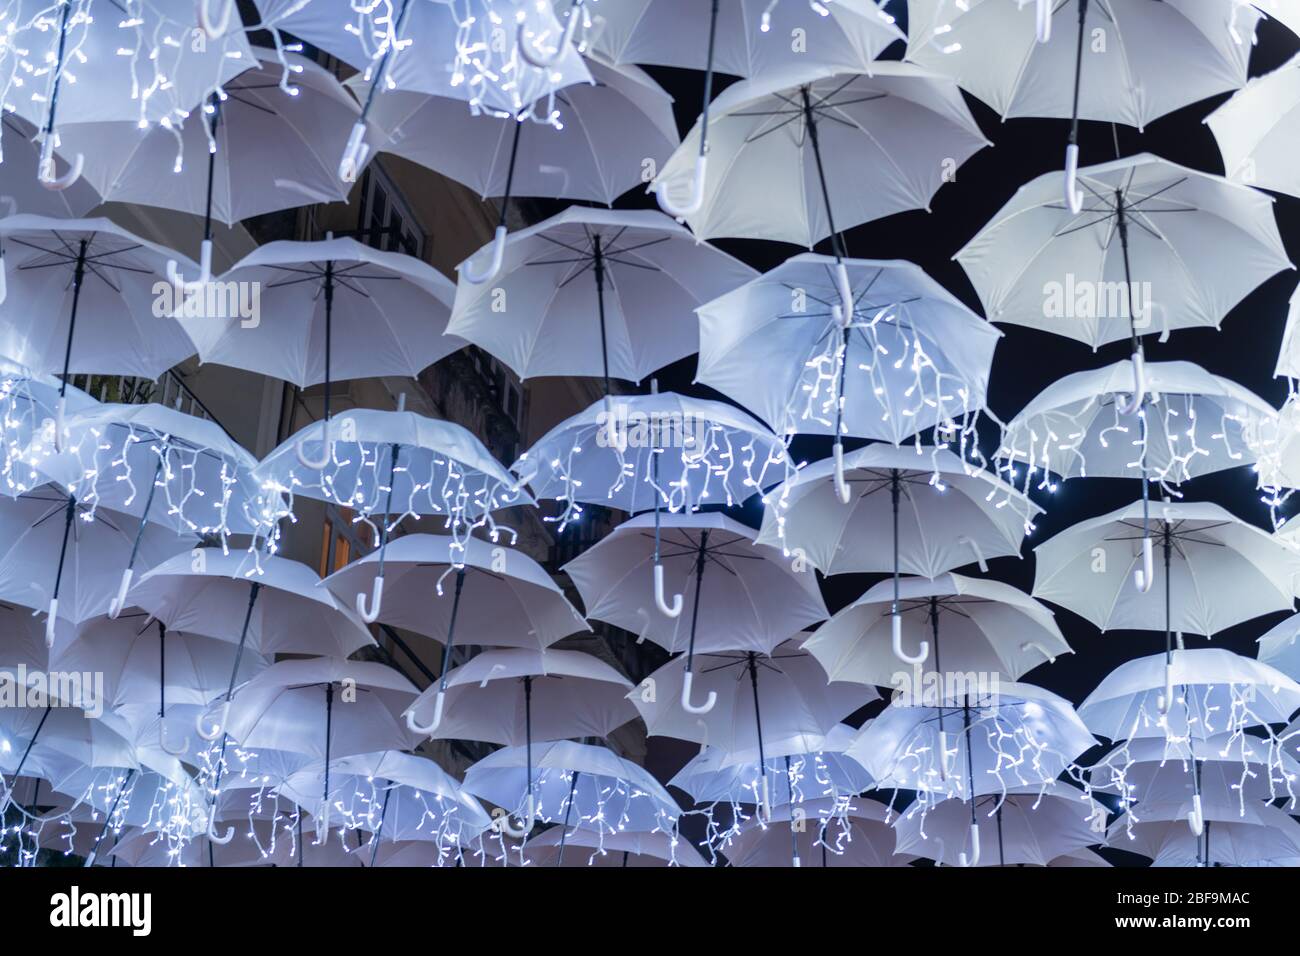 La belleza de los paraguas blancos, Ilumatinados por las luces navideñas  que decoran las calles de Agueda Portugal Fotografía de stock - Alamy